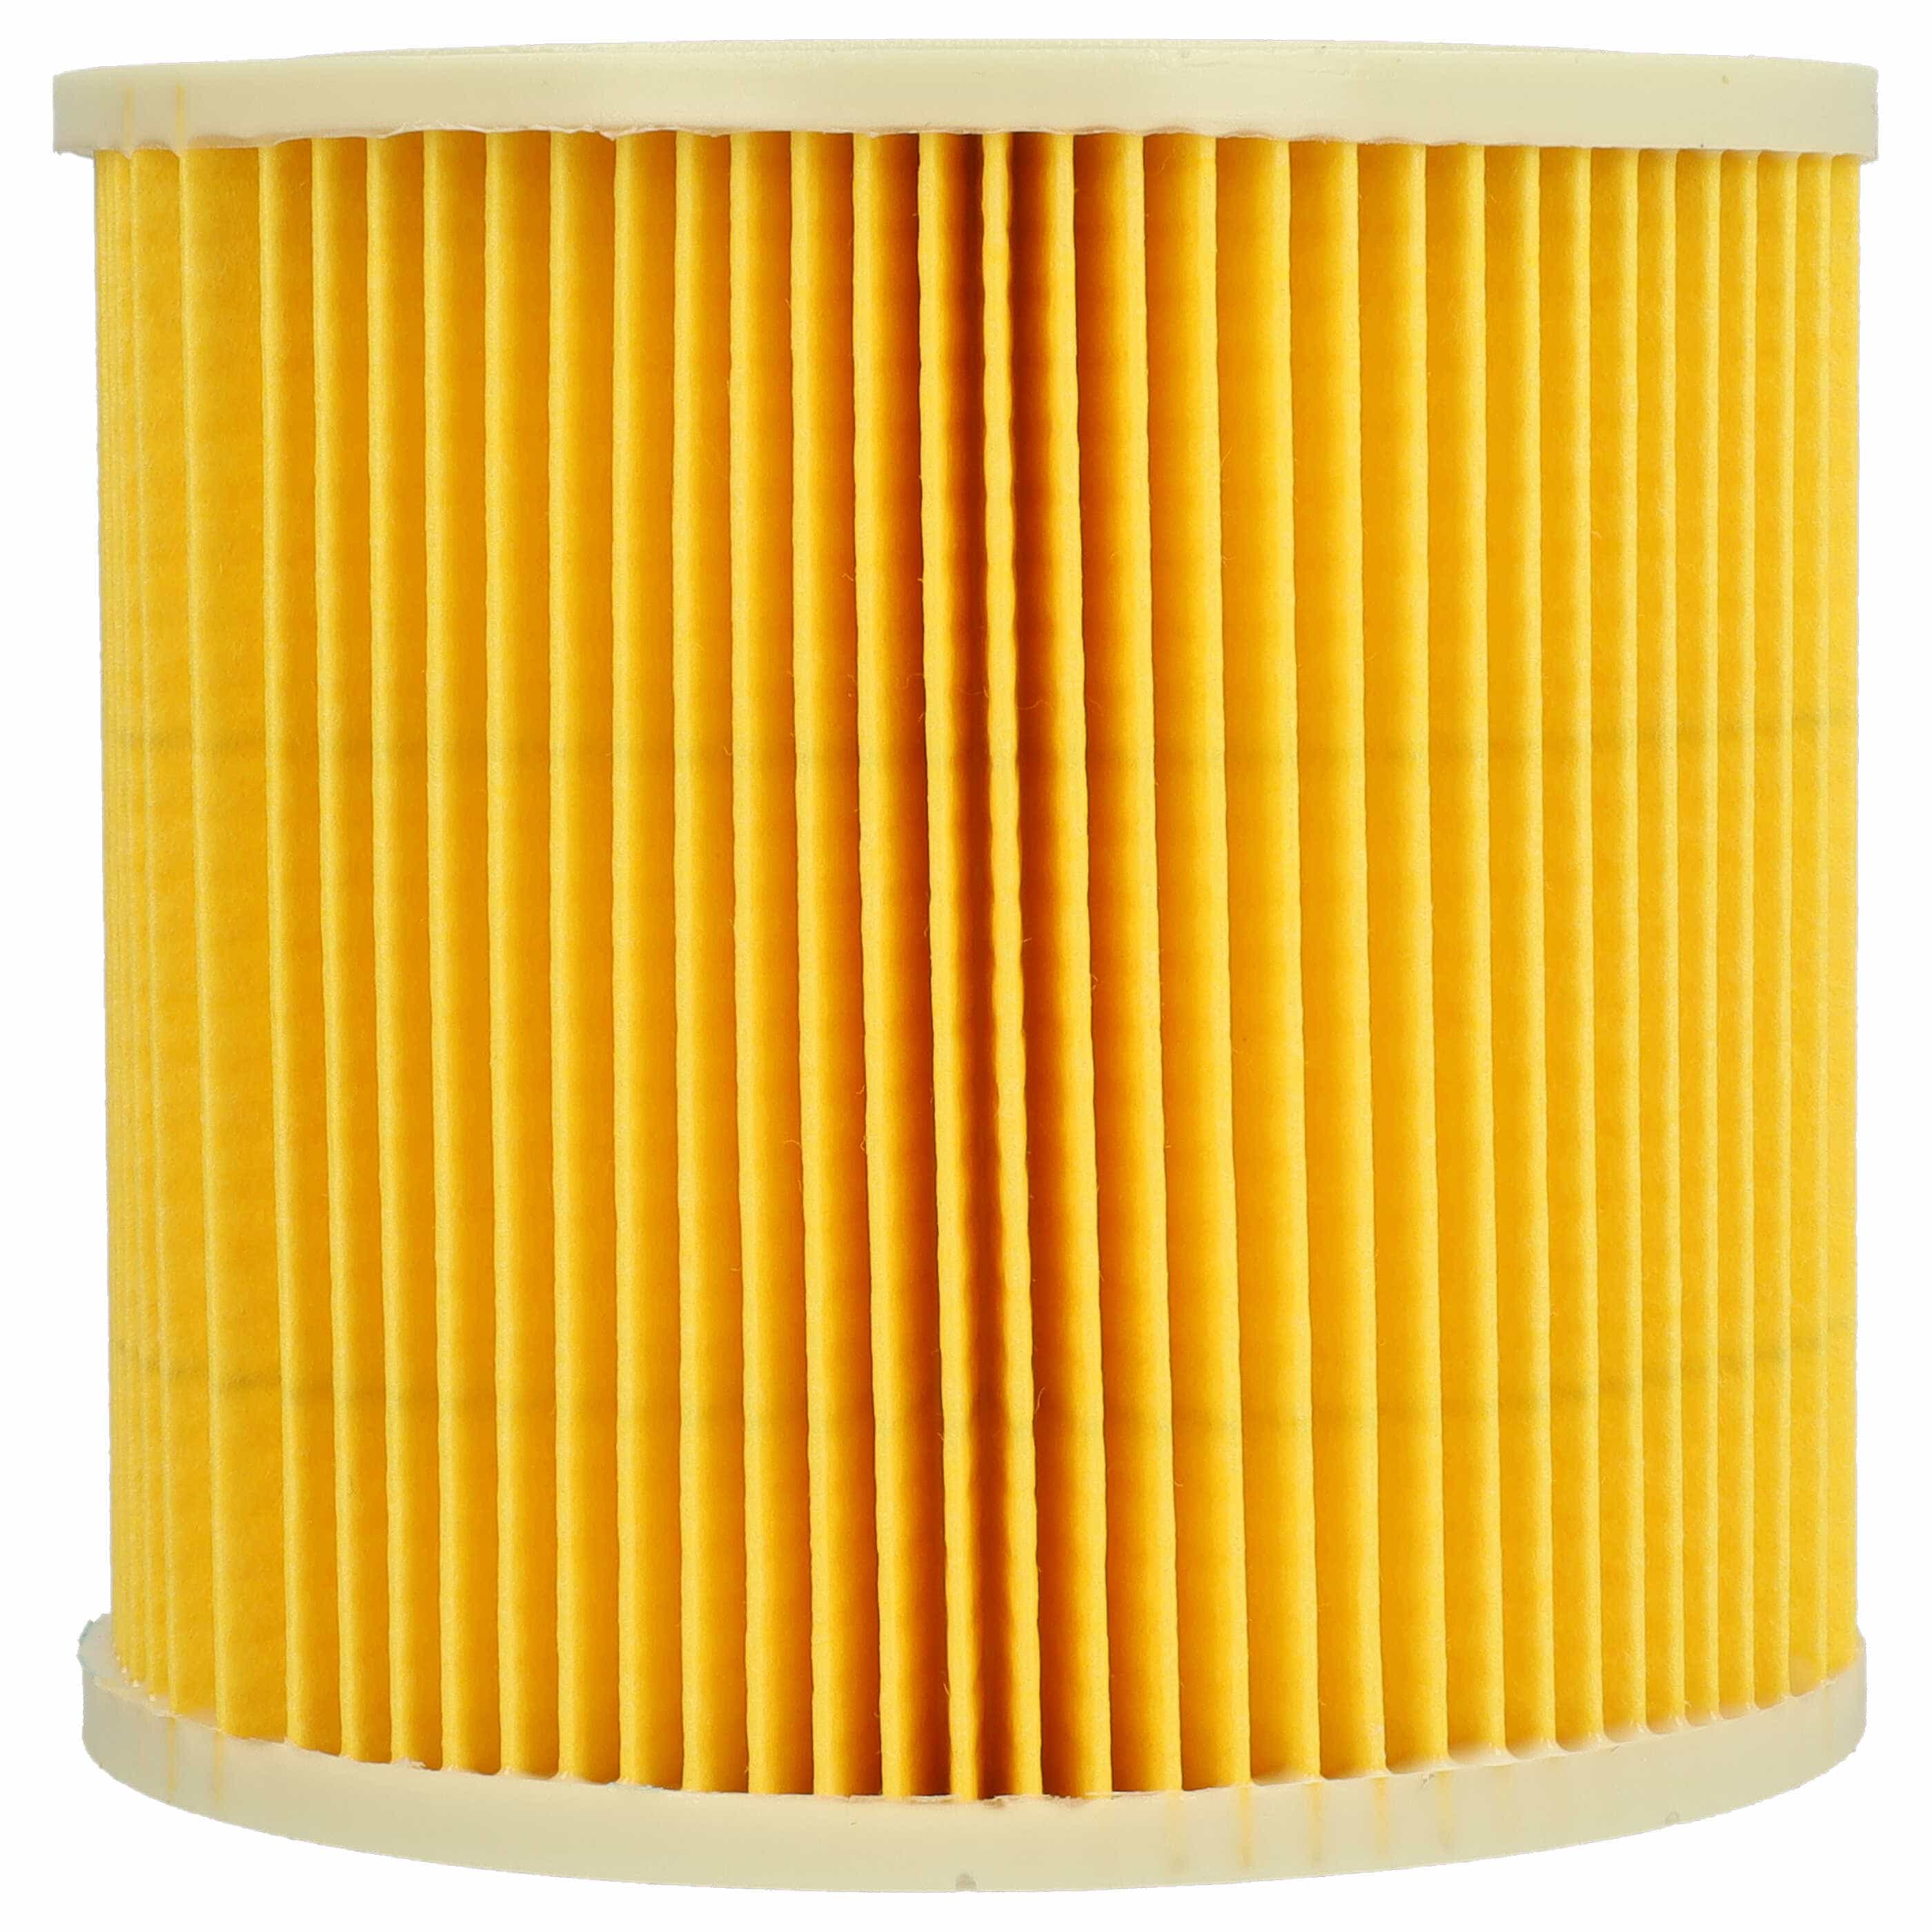 3x Filtro sostituisce Kärcher 2.863-303.0, 6.414-547.0 per aspirapolvere - filtro cartucce, giallo